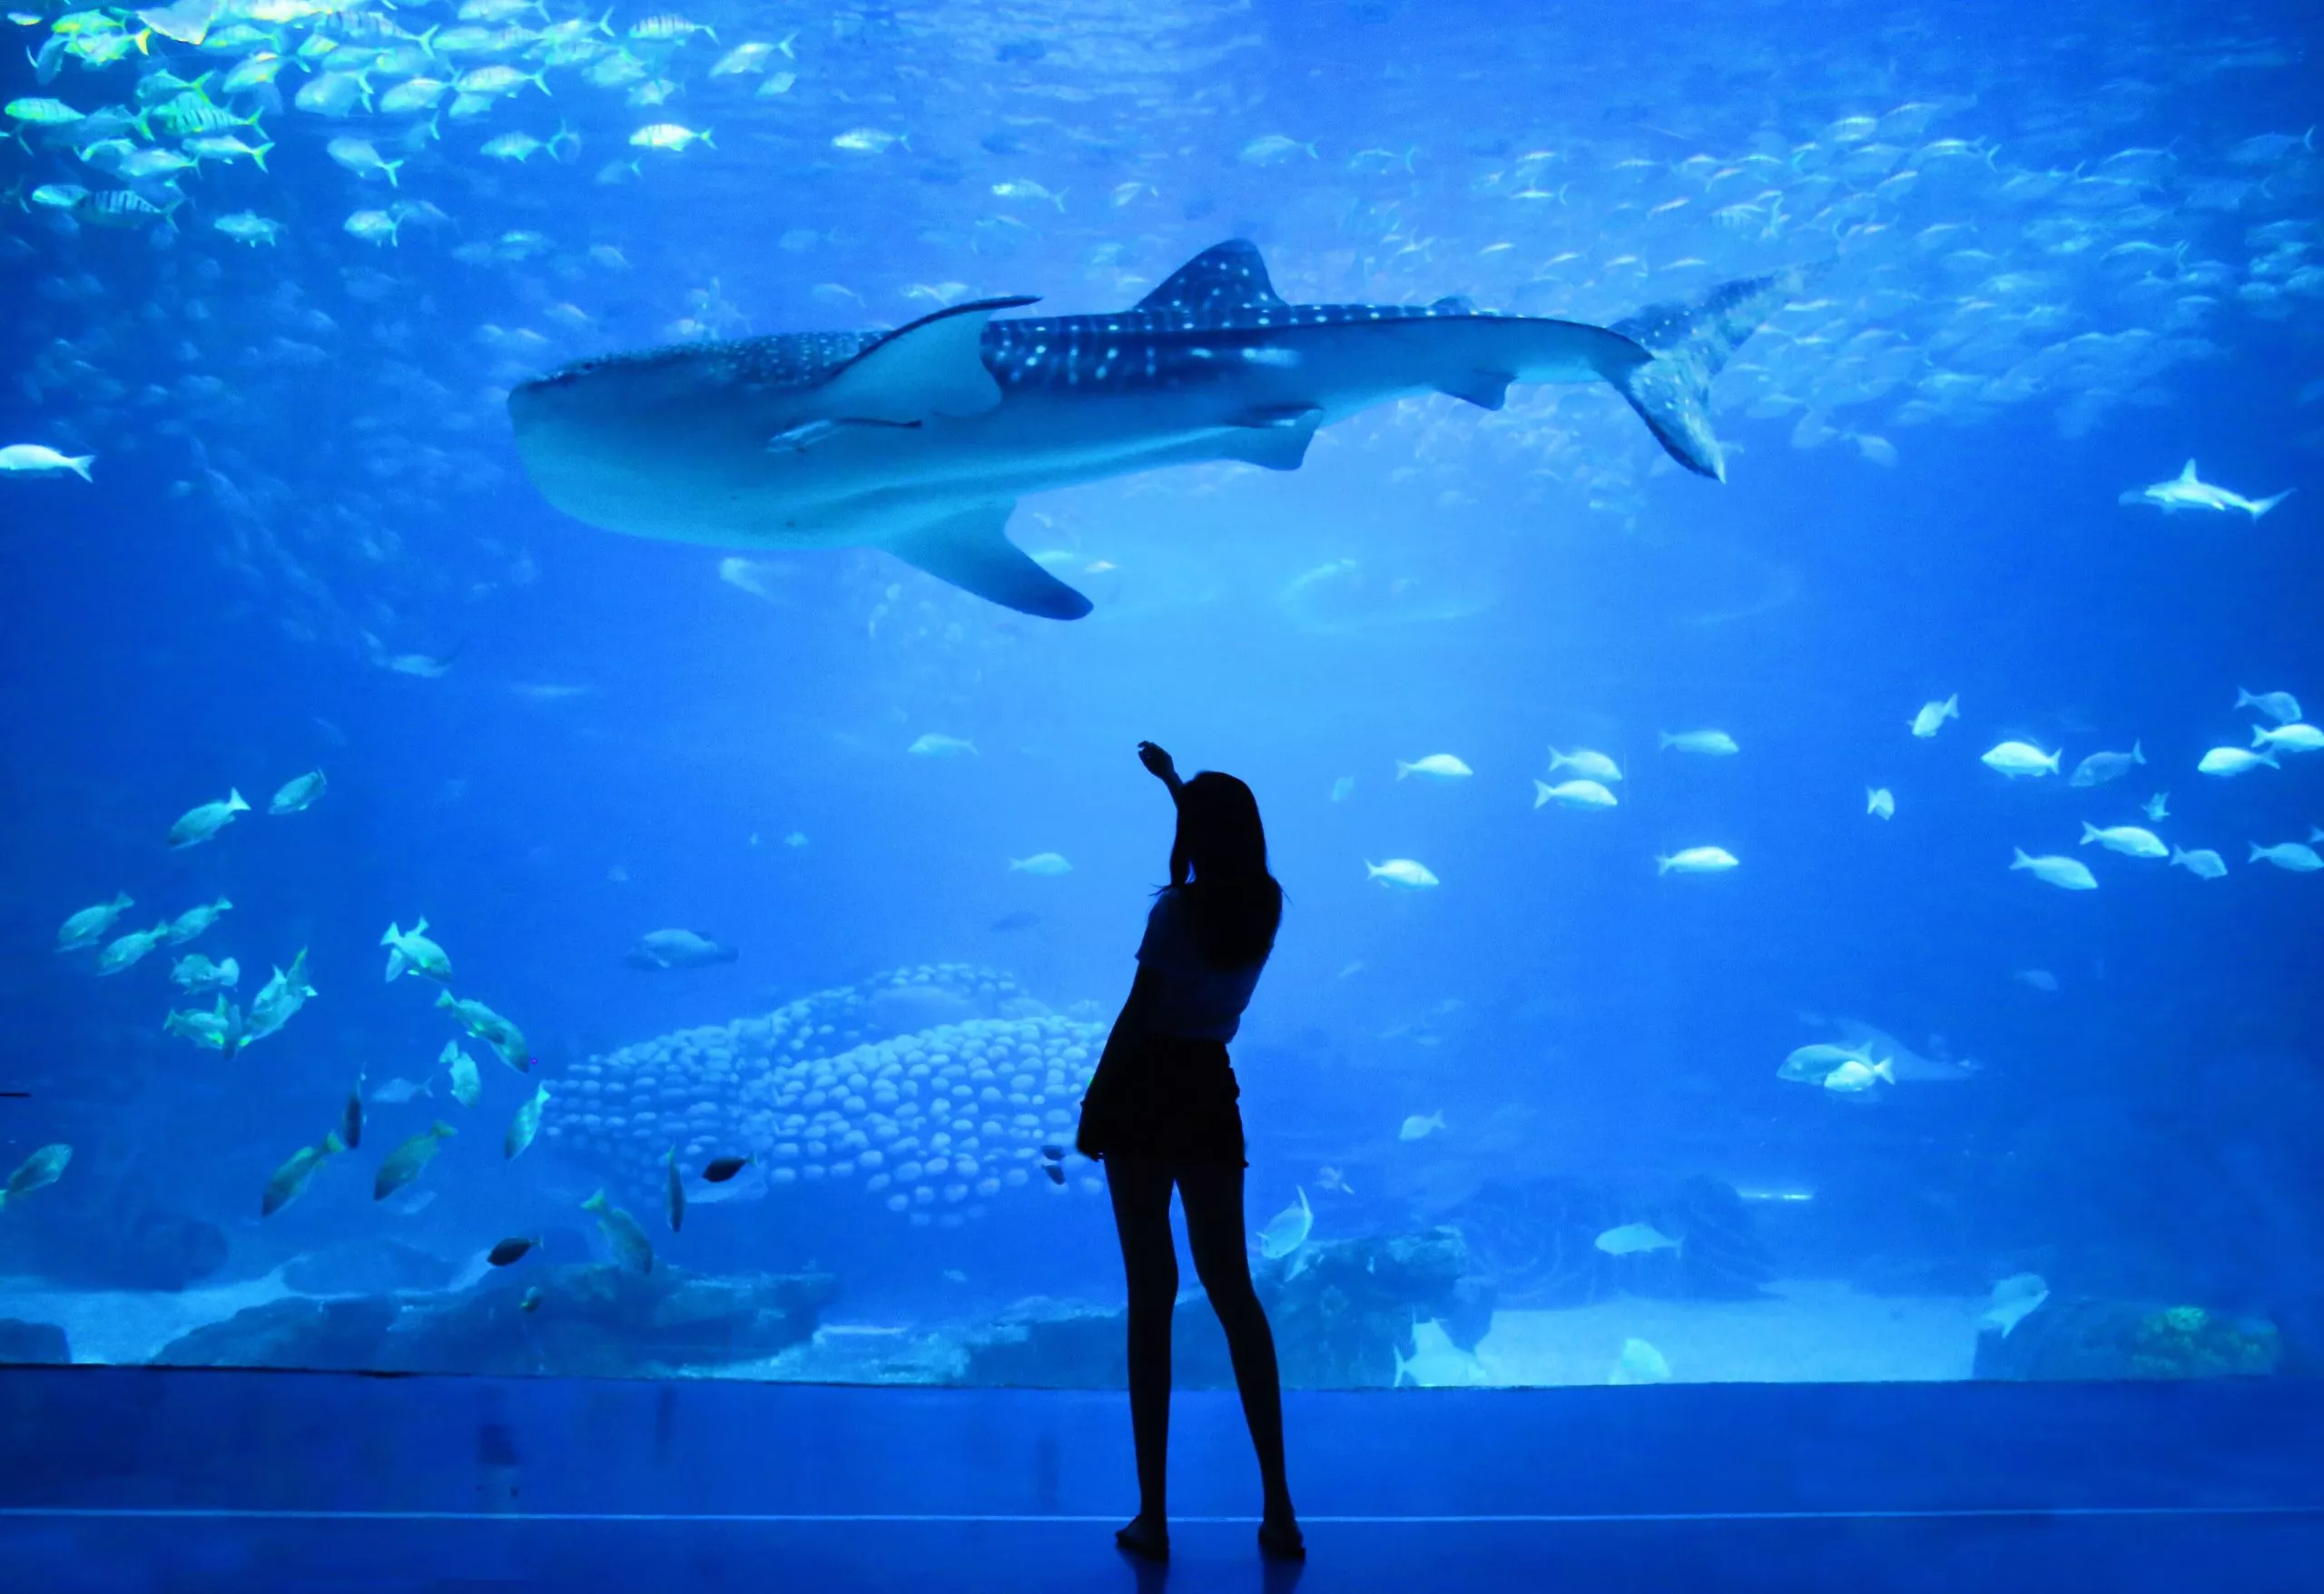 Sunpiazza Aquarium in Japan, East Asia | Aquariums & Oceanariums - Rated 3.2